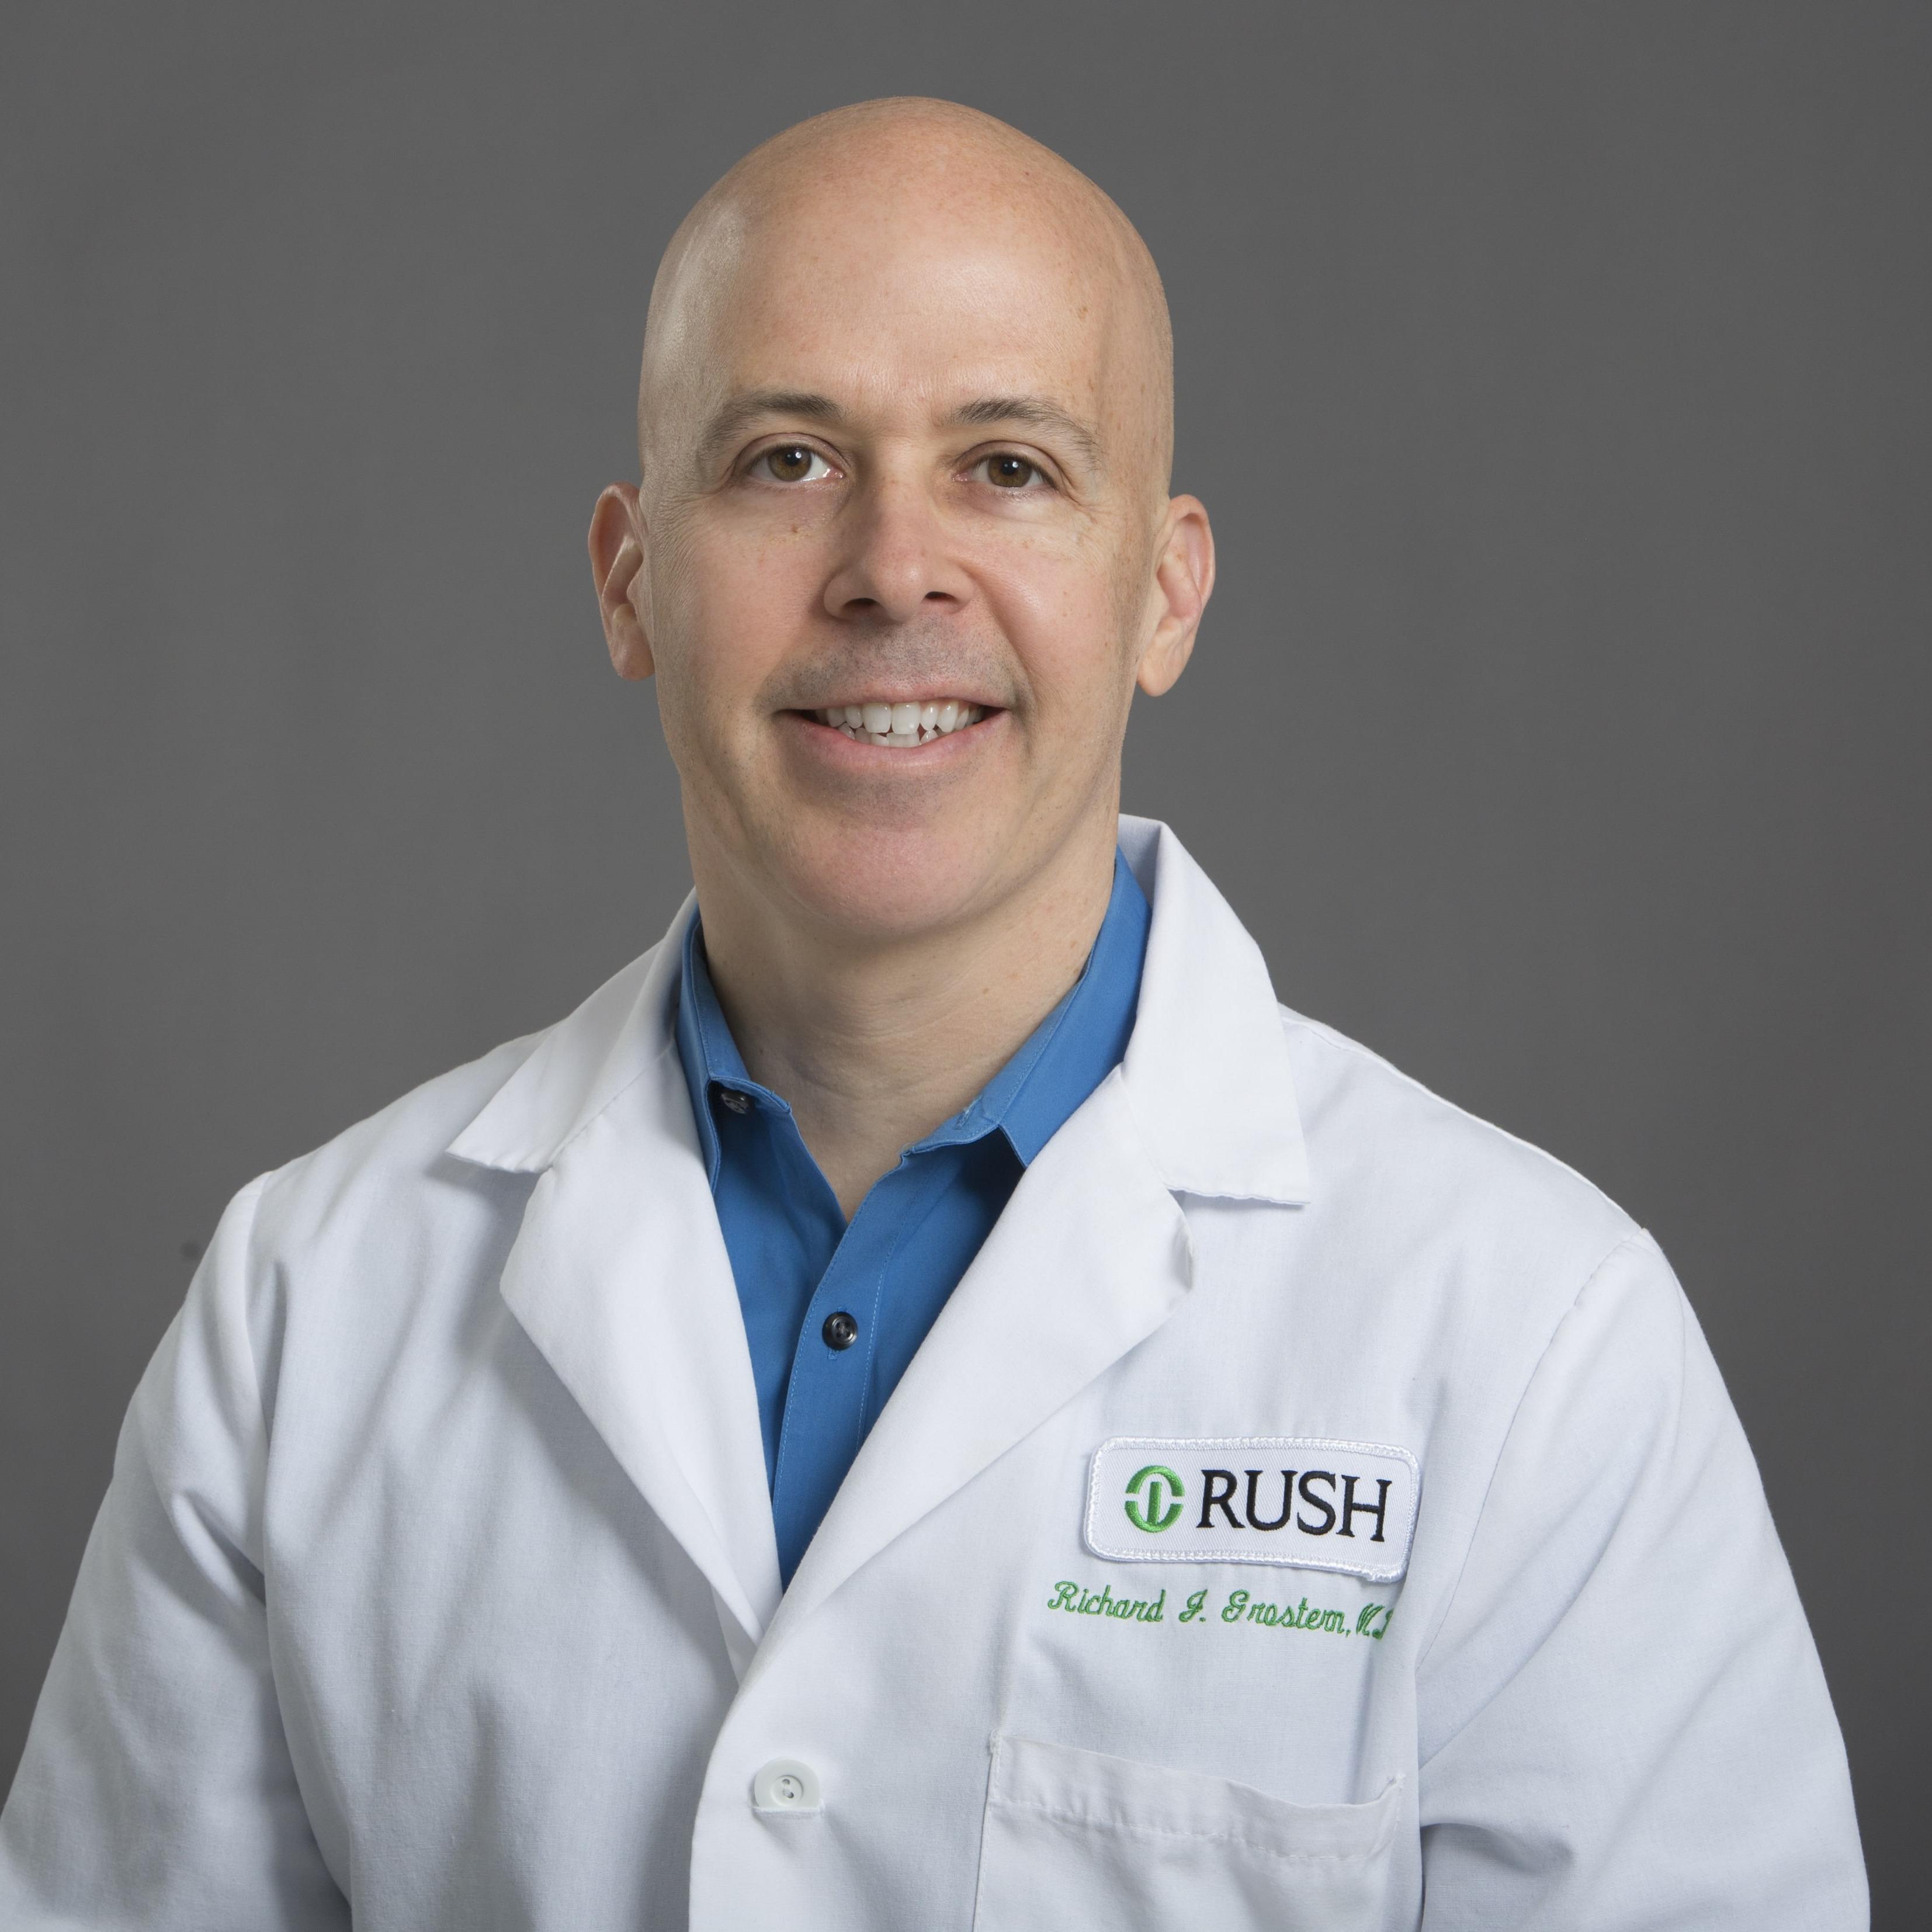 Dr. Richard J. Grostern, MD